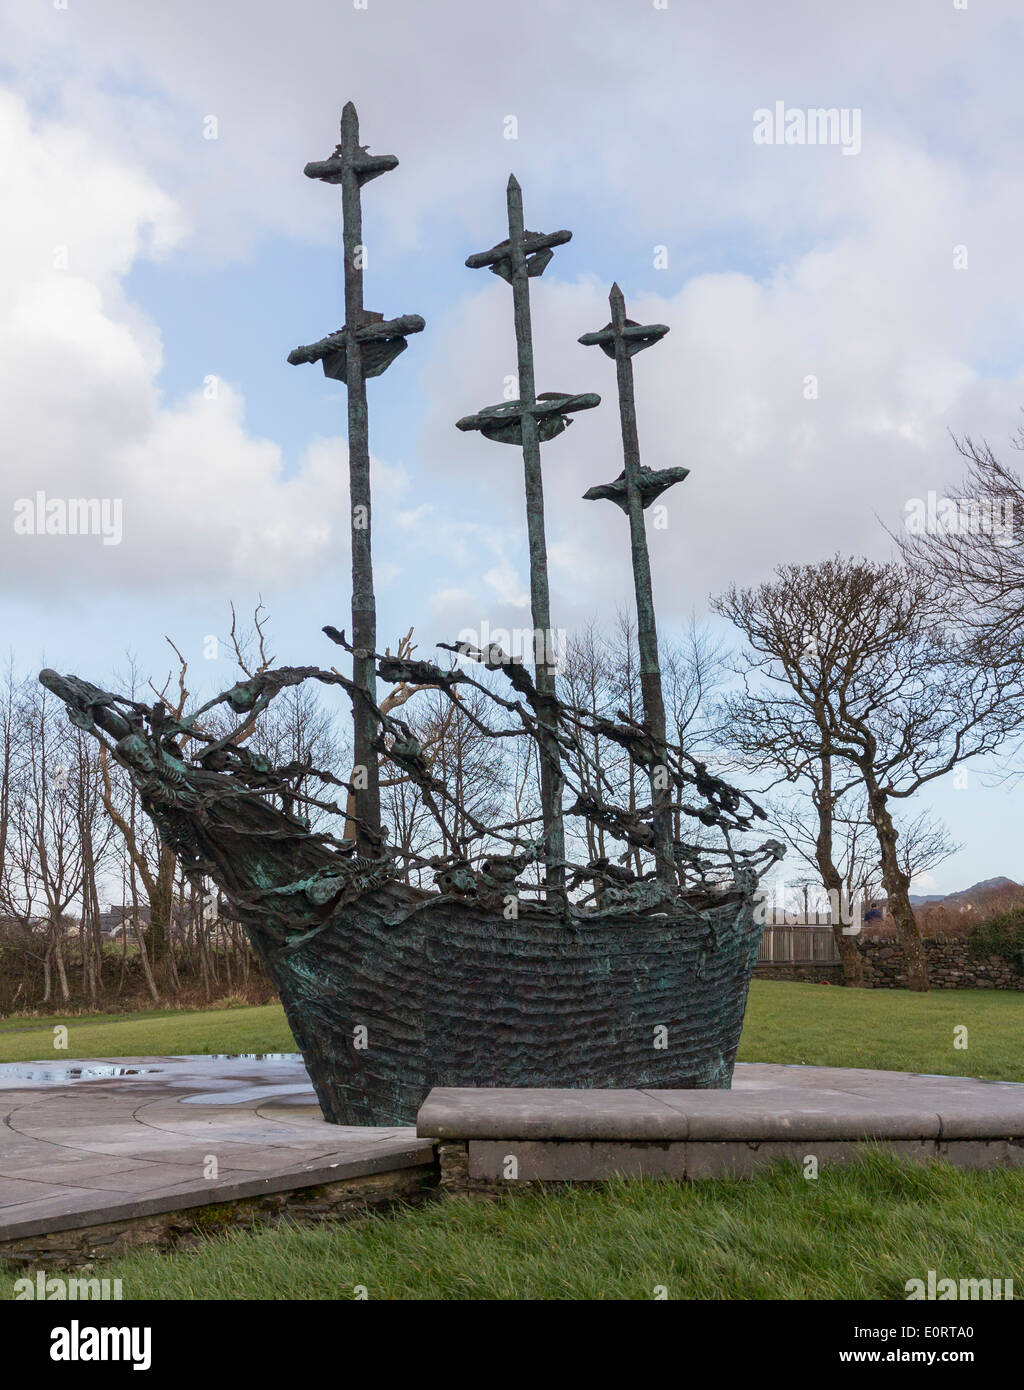 Sarg-Schiff-Skulptur in Murrisk, County Mayo, Irland Gedenken der großen Hungersnot in Irland und Emigration nach USA Stockfoto